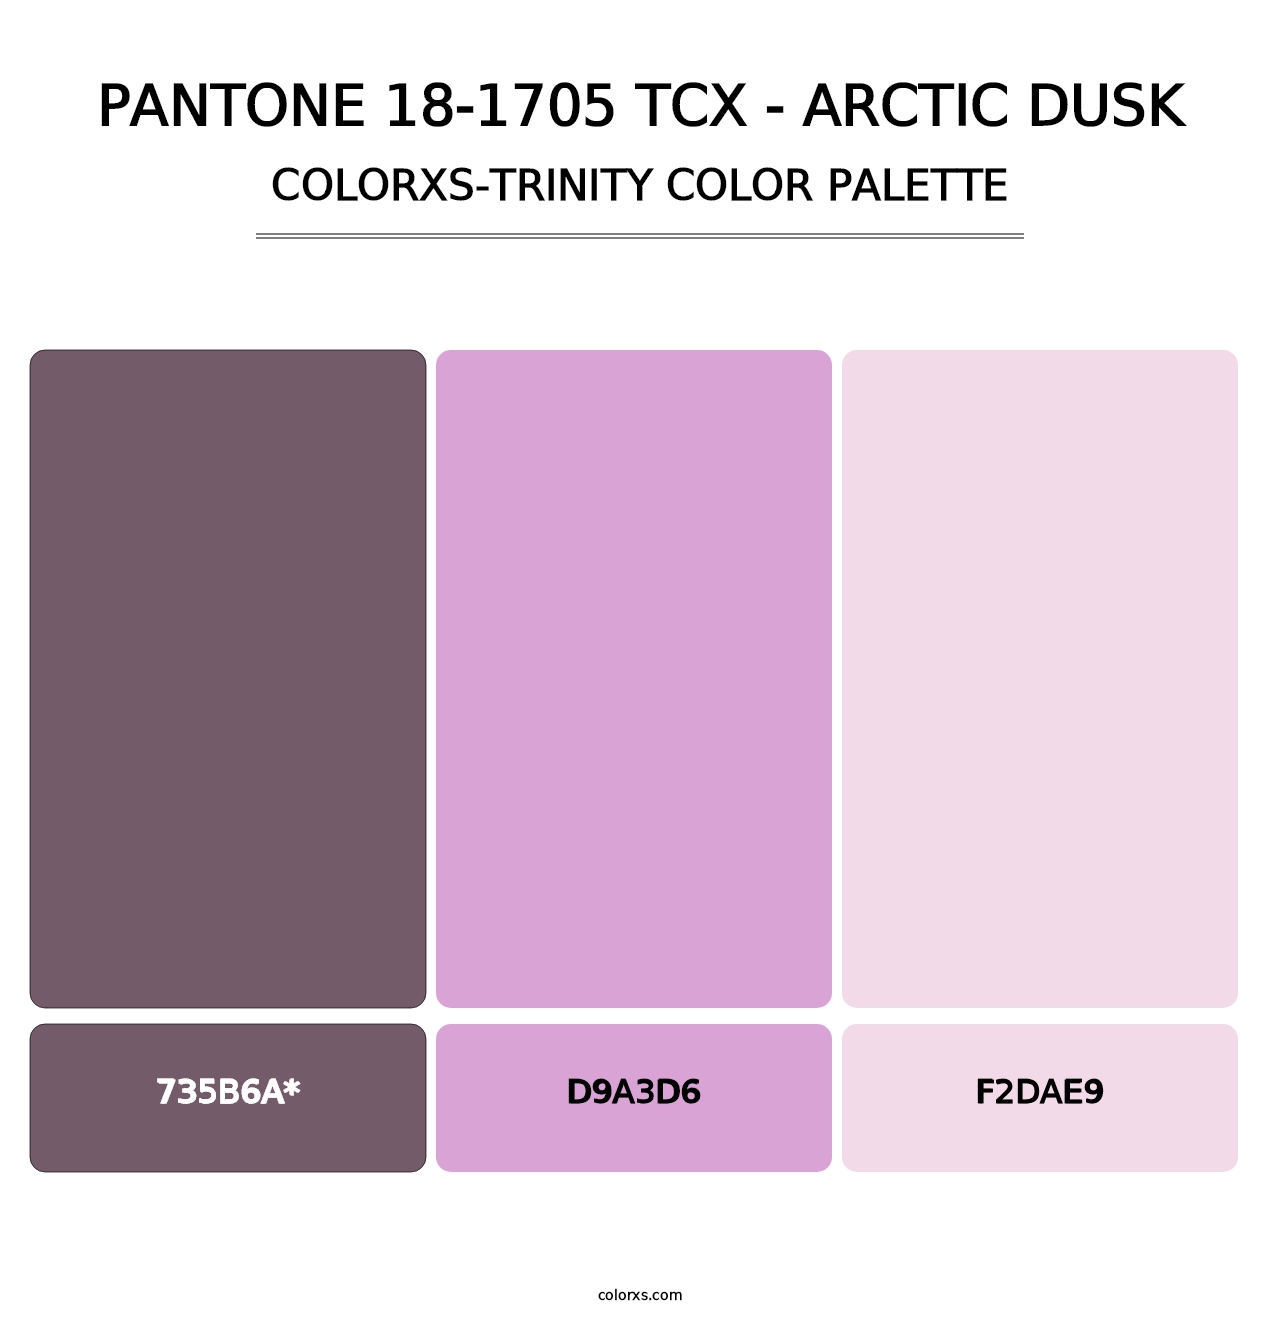 PANTONE 18-1705 TCX - Arctic Dusk - Colorxs Trinity Palette